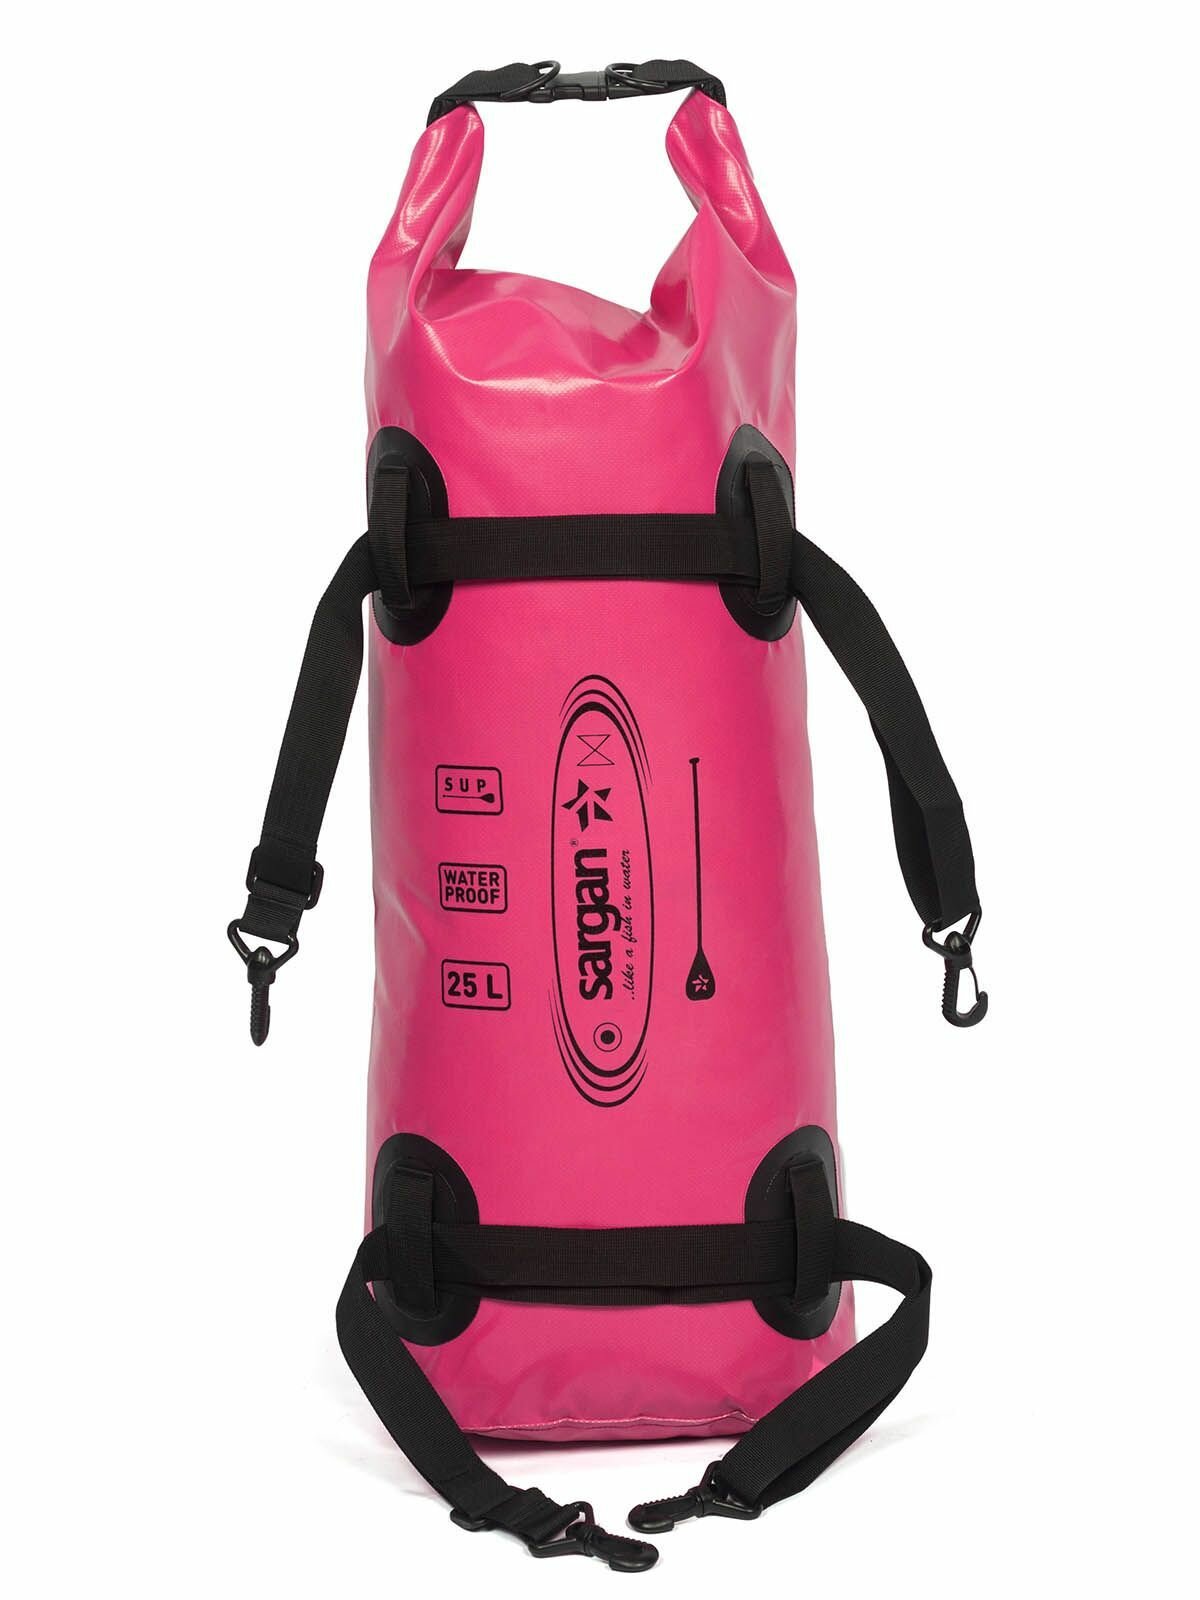 Гермомешок для водного спорта и SUP сапборда SARGAN саппер объем 25 литров розовый